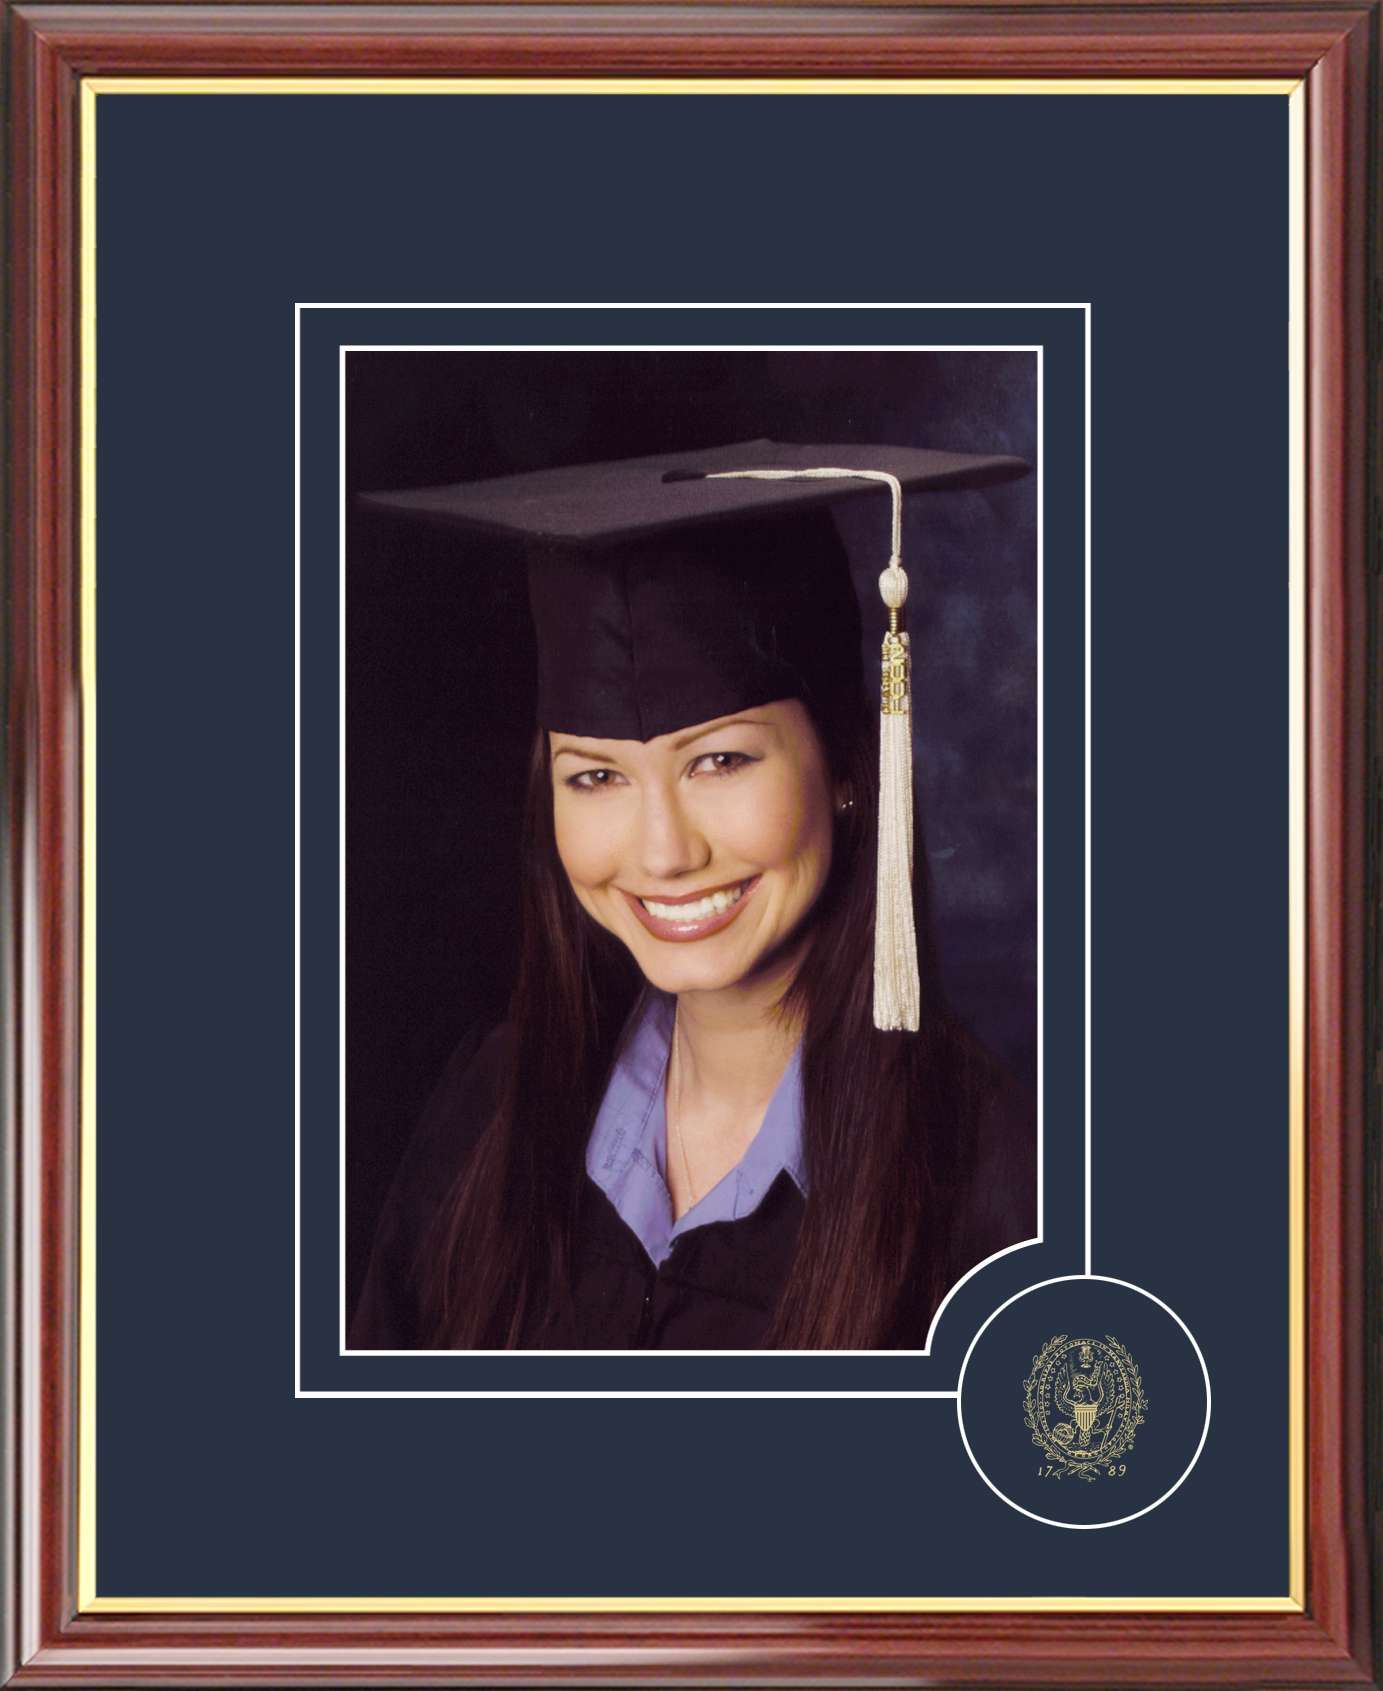 Campus Images Georgetown Patriots 5x7 Graduate Portrait Frame